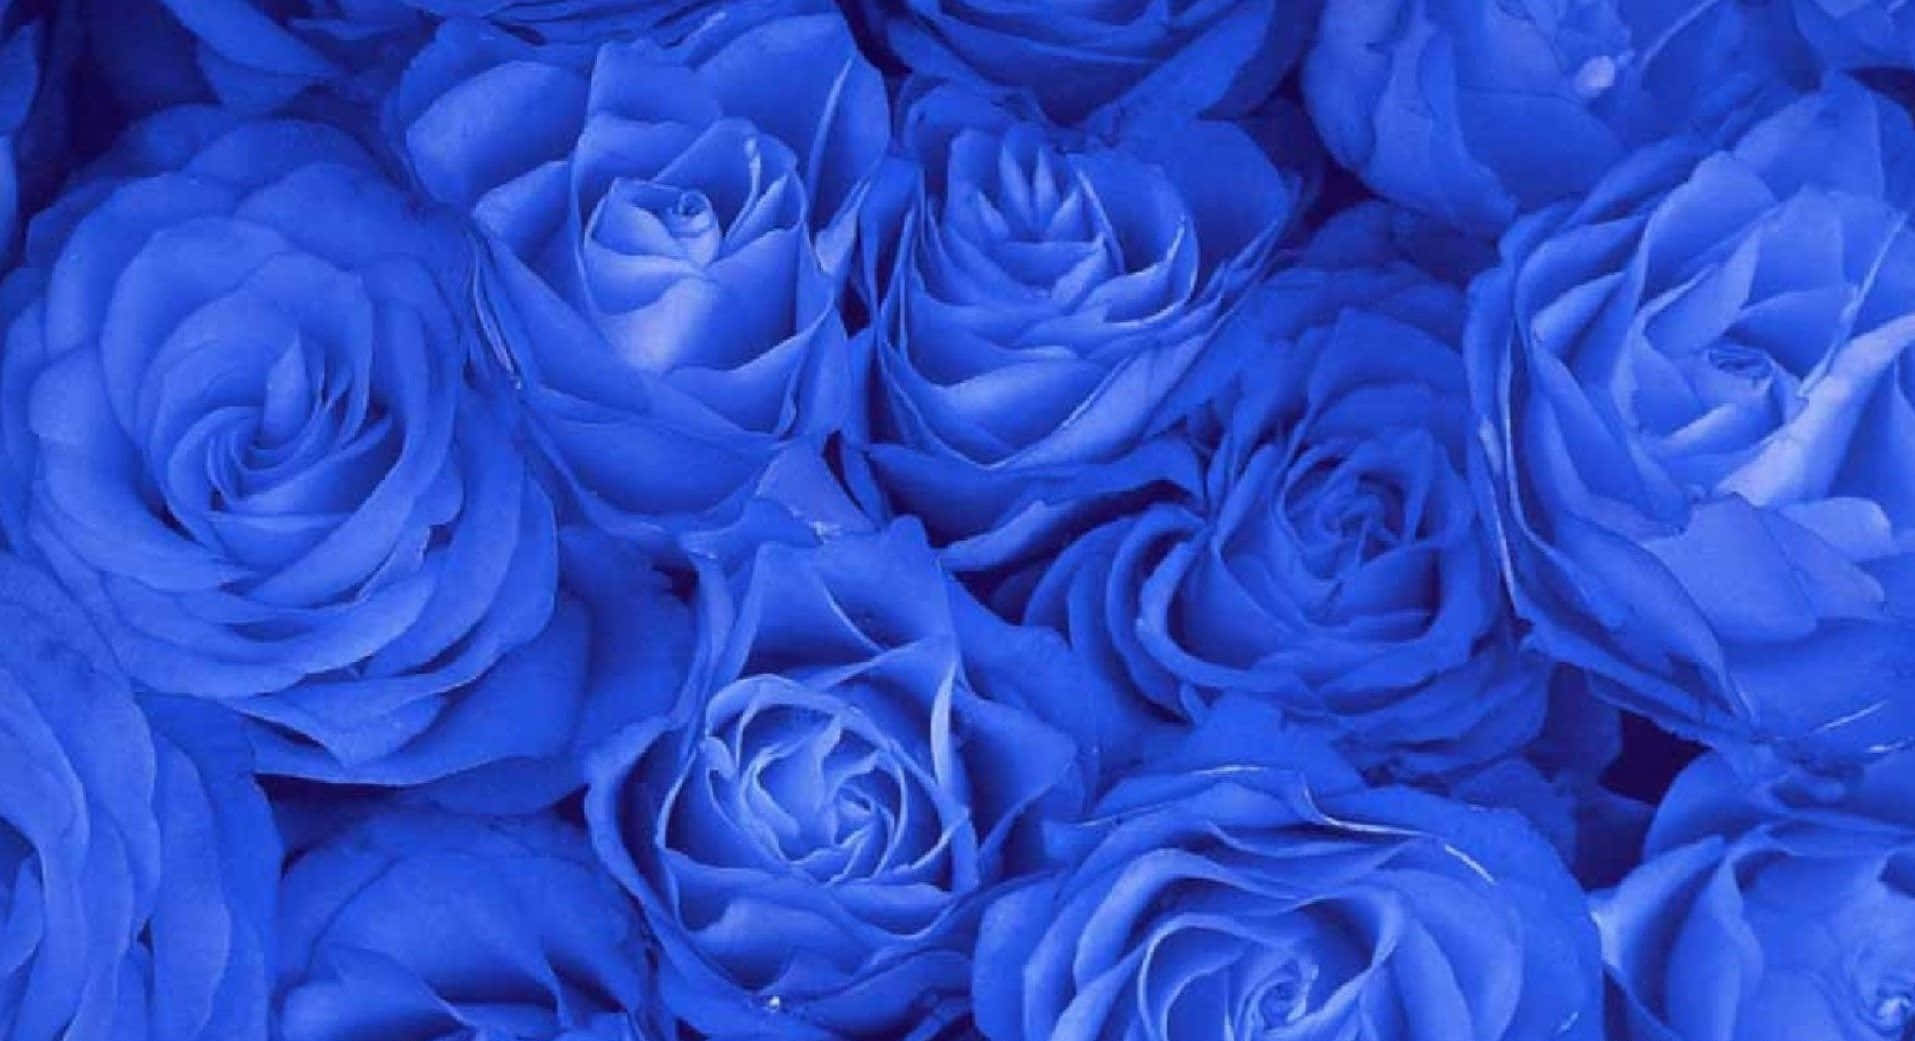 Imagende Un Montón De Flores De Rosas Azules.